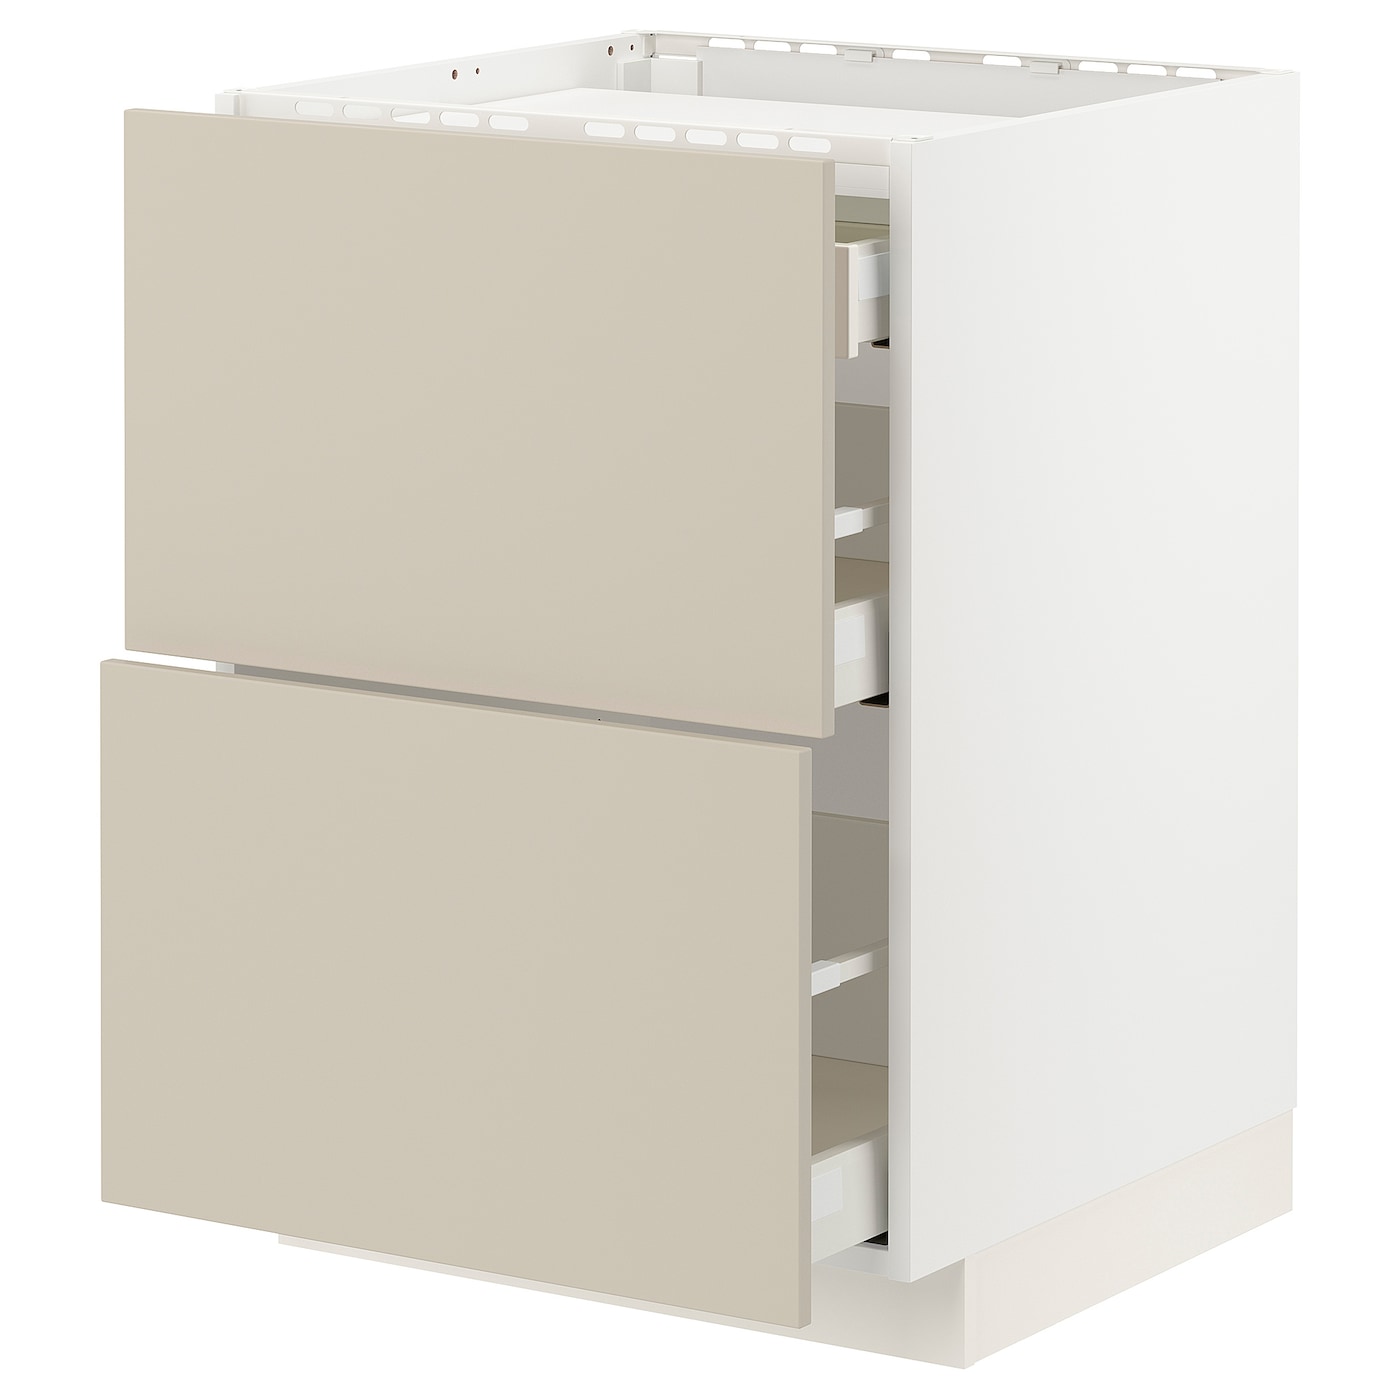 Напольный шкаф - IKEA METOD MAXIMERA, 88x62x60см,белый/бежевый, МЕТОД МАКСИМЕРА ИКЕА